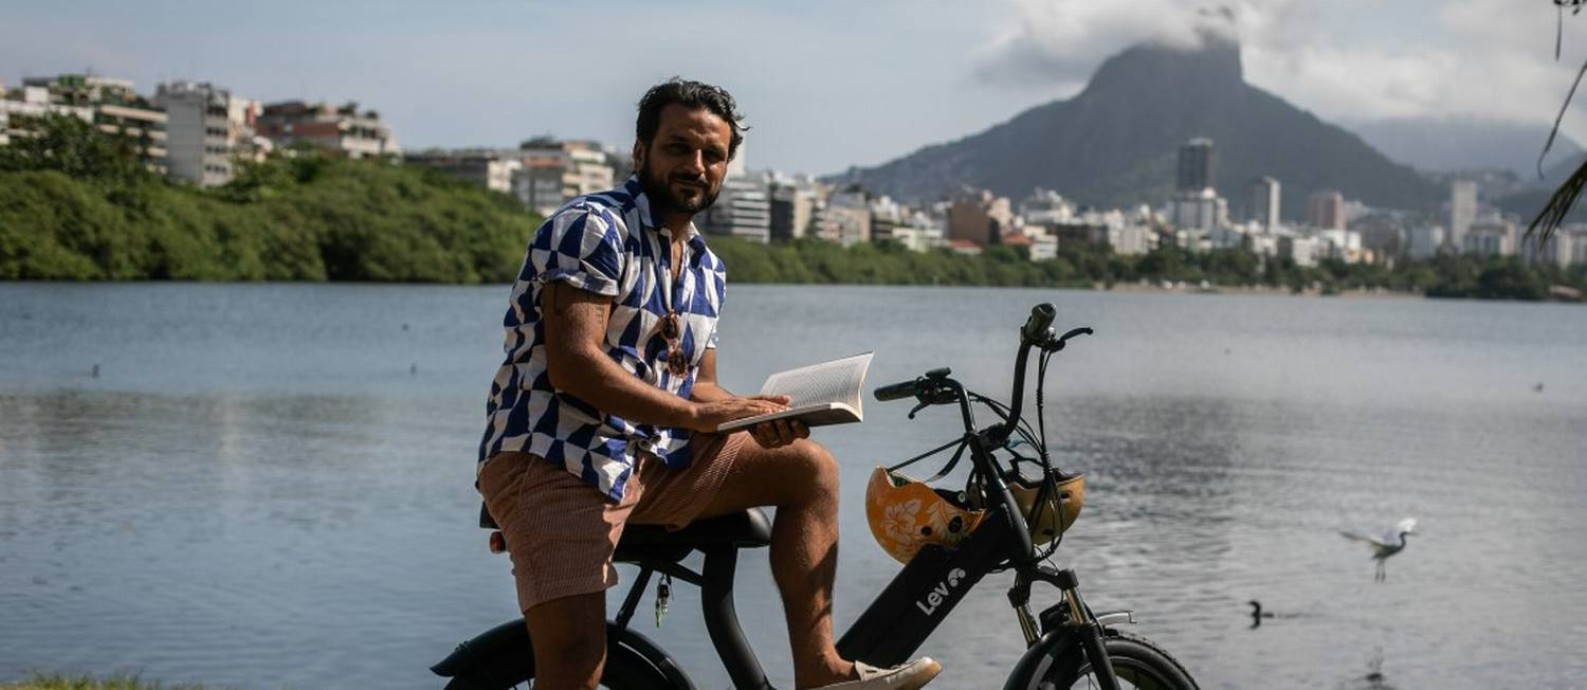 Mercado de bikes elétricas cresce no Brasil. Na foto, Pedro Salomão usa meio para se locomover para o trabalho, mercado, etc. Foto: Brenno Carvalho / Agência O Globo